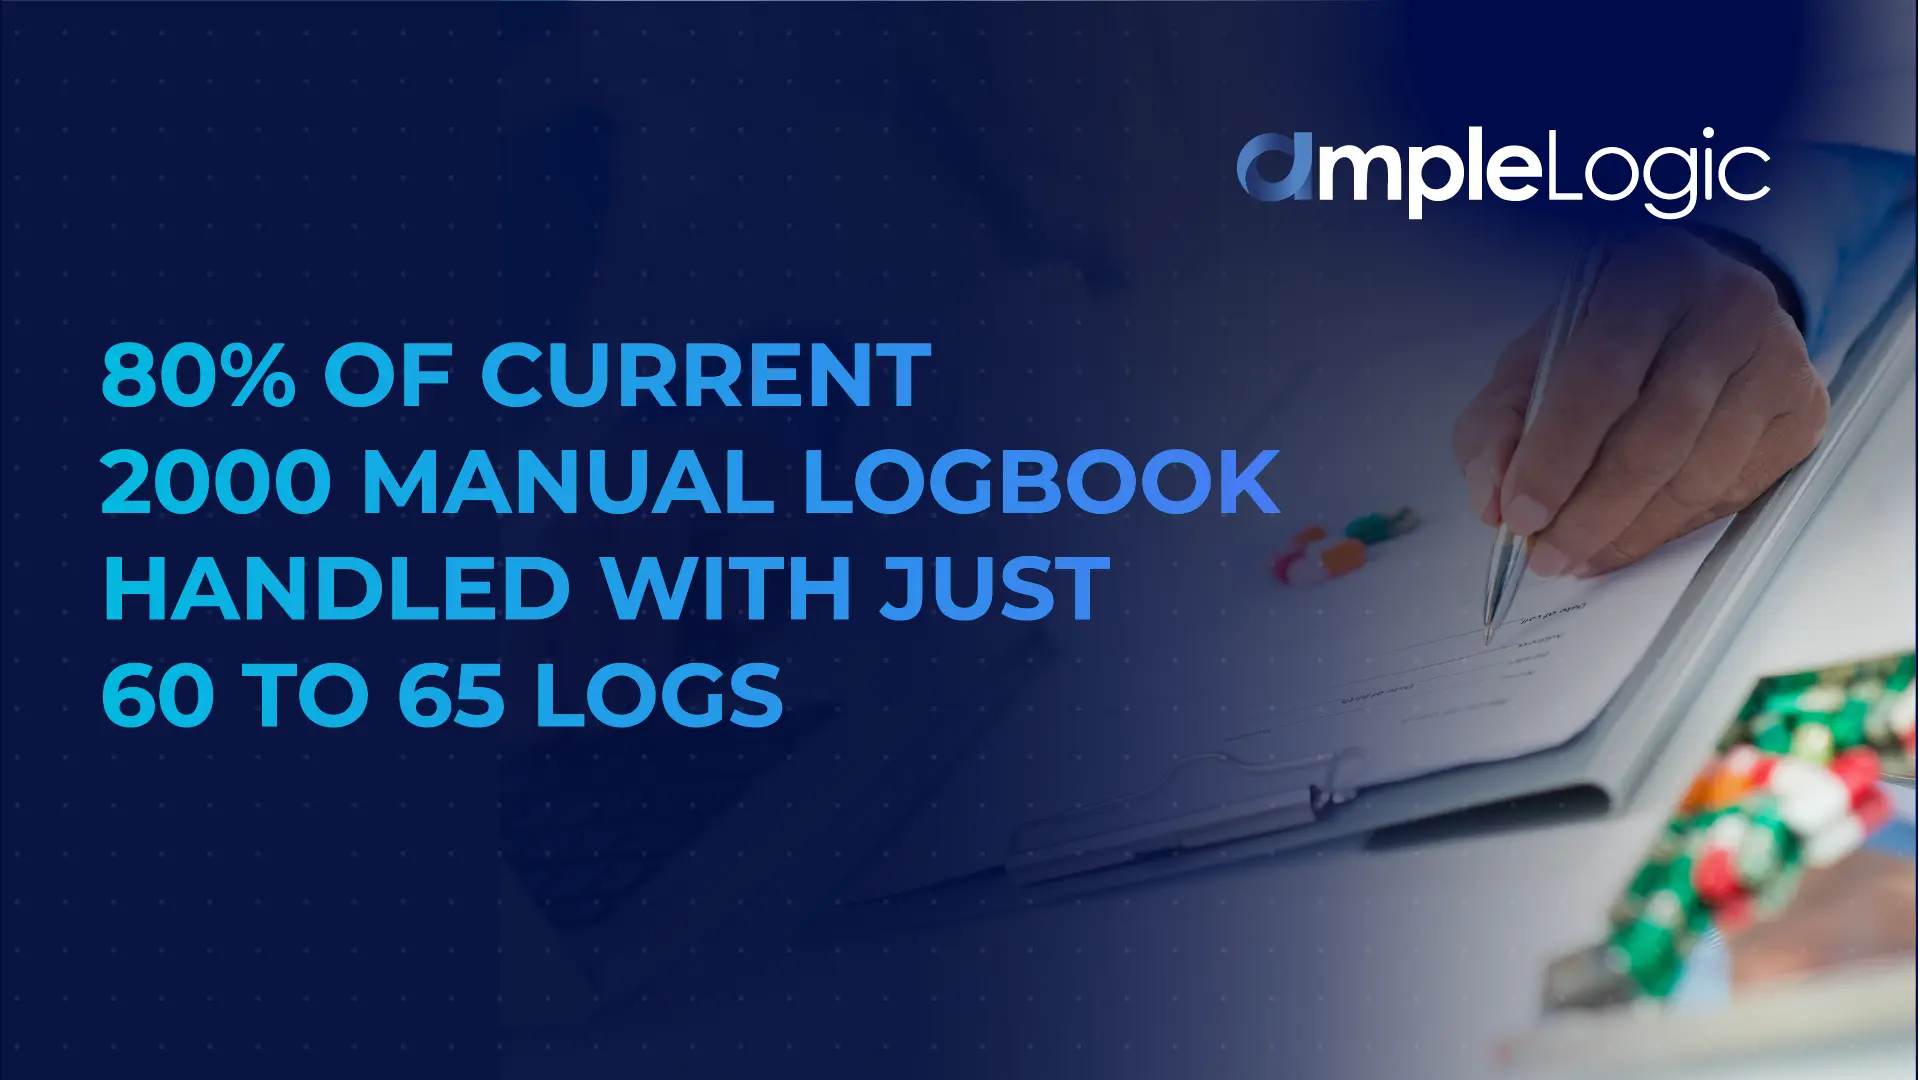 e logbook management system